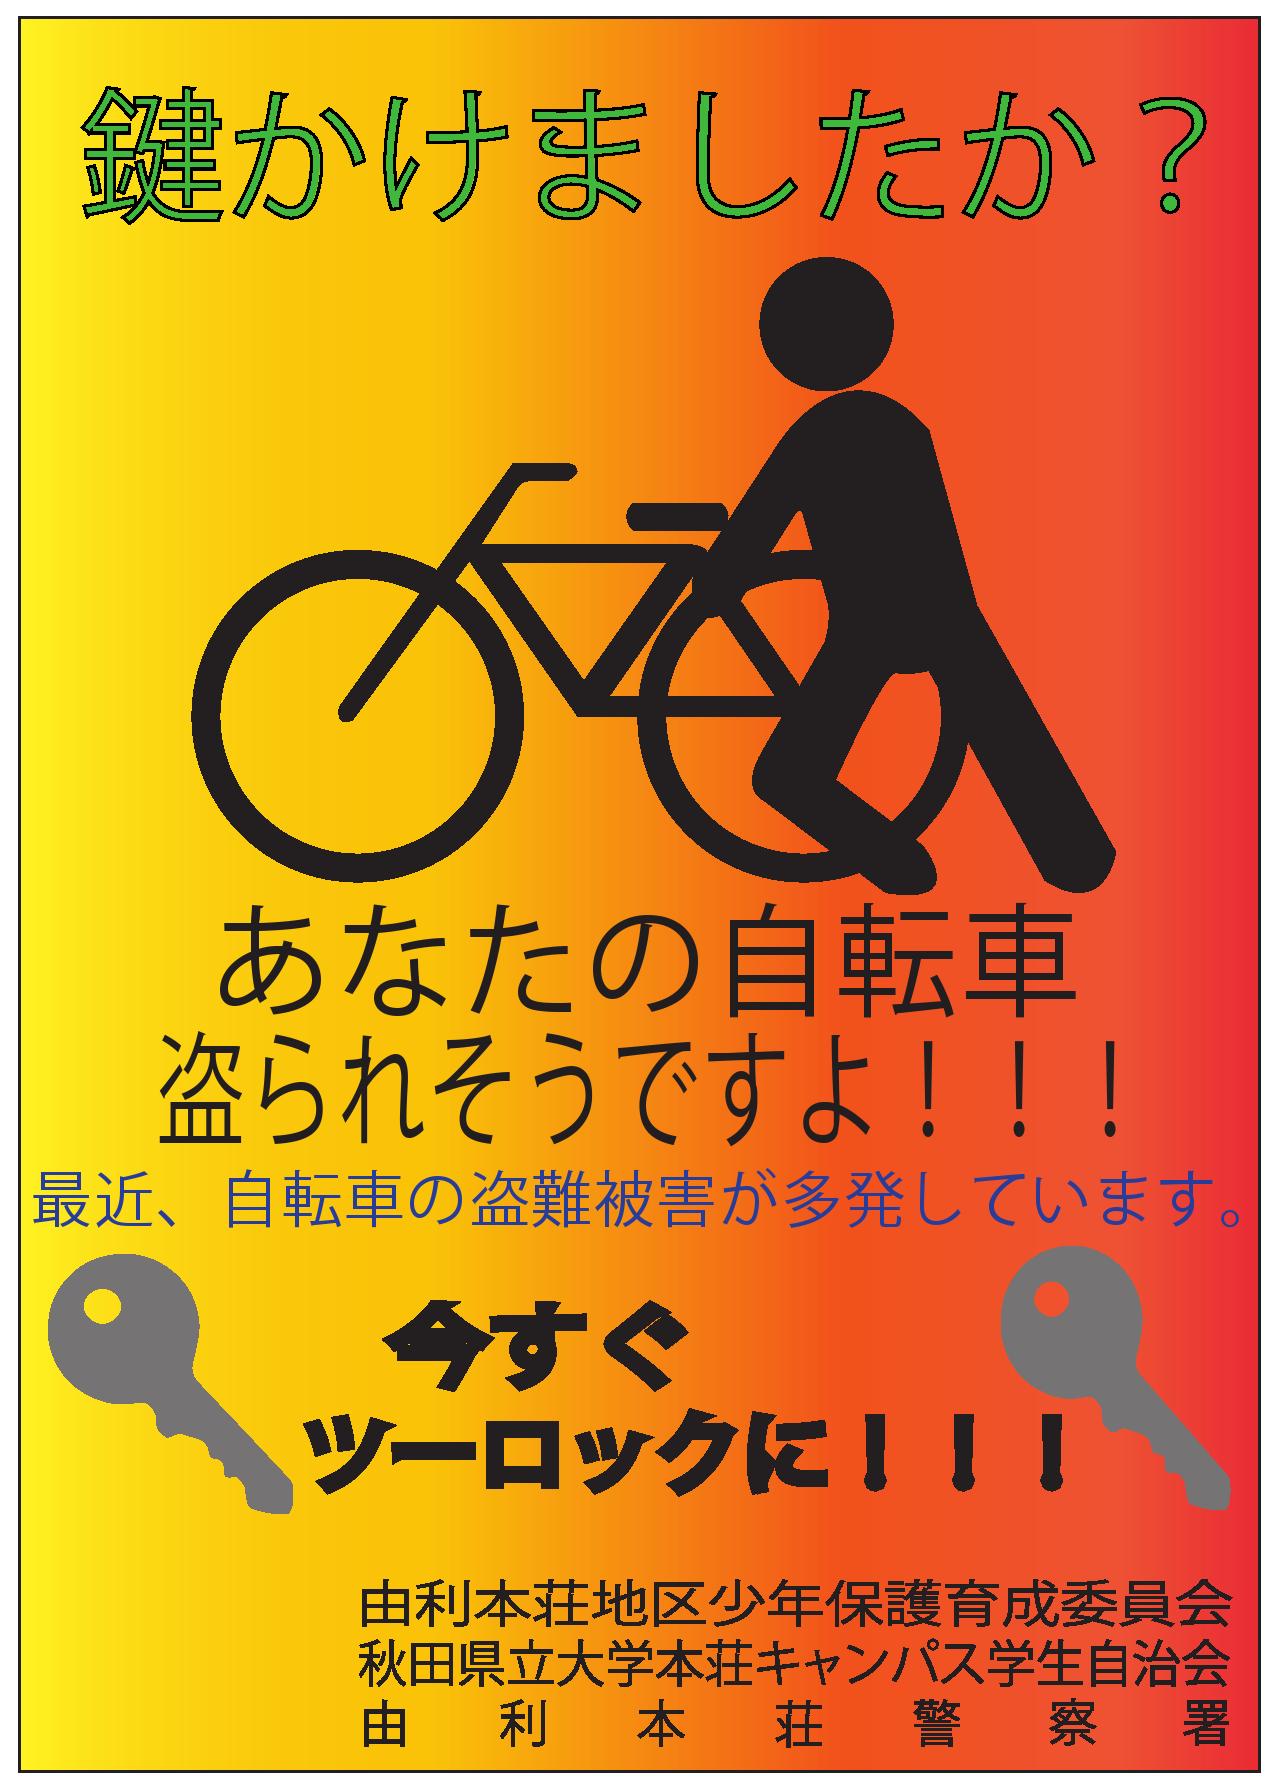 井上さんがデザインしたポスター